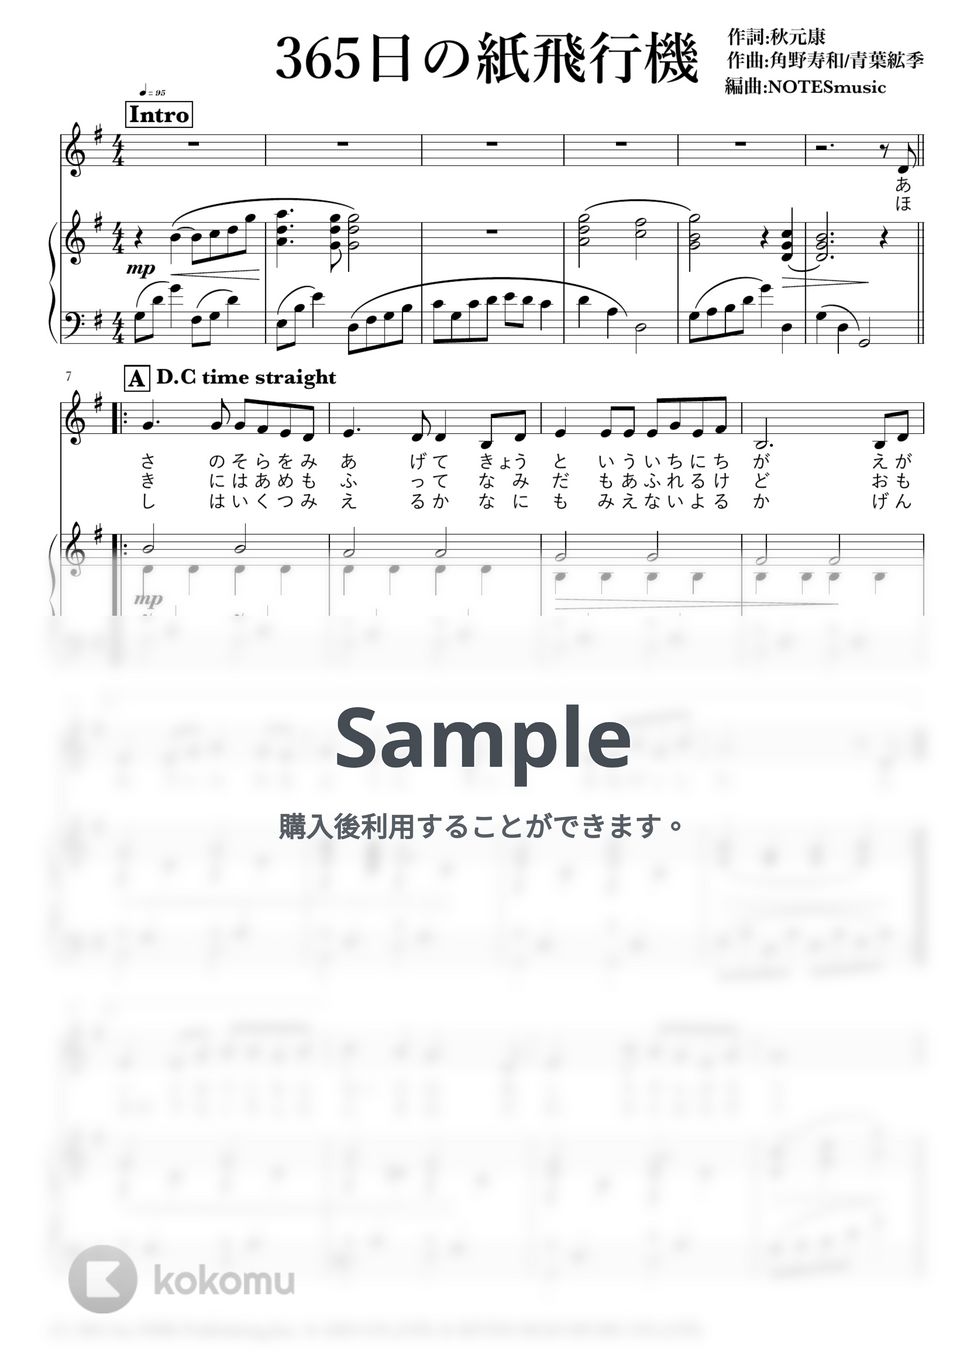 AKB48 - 365日の紙飛行機 by NOTES music